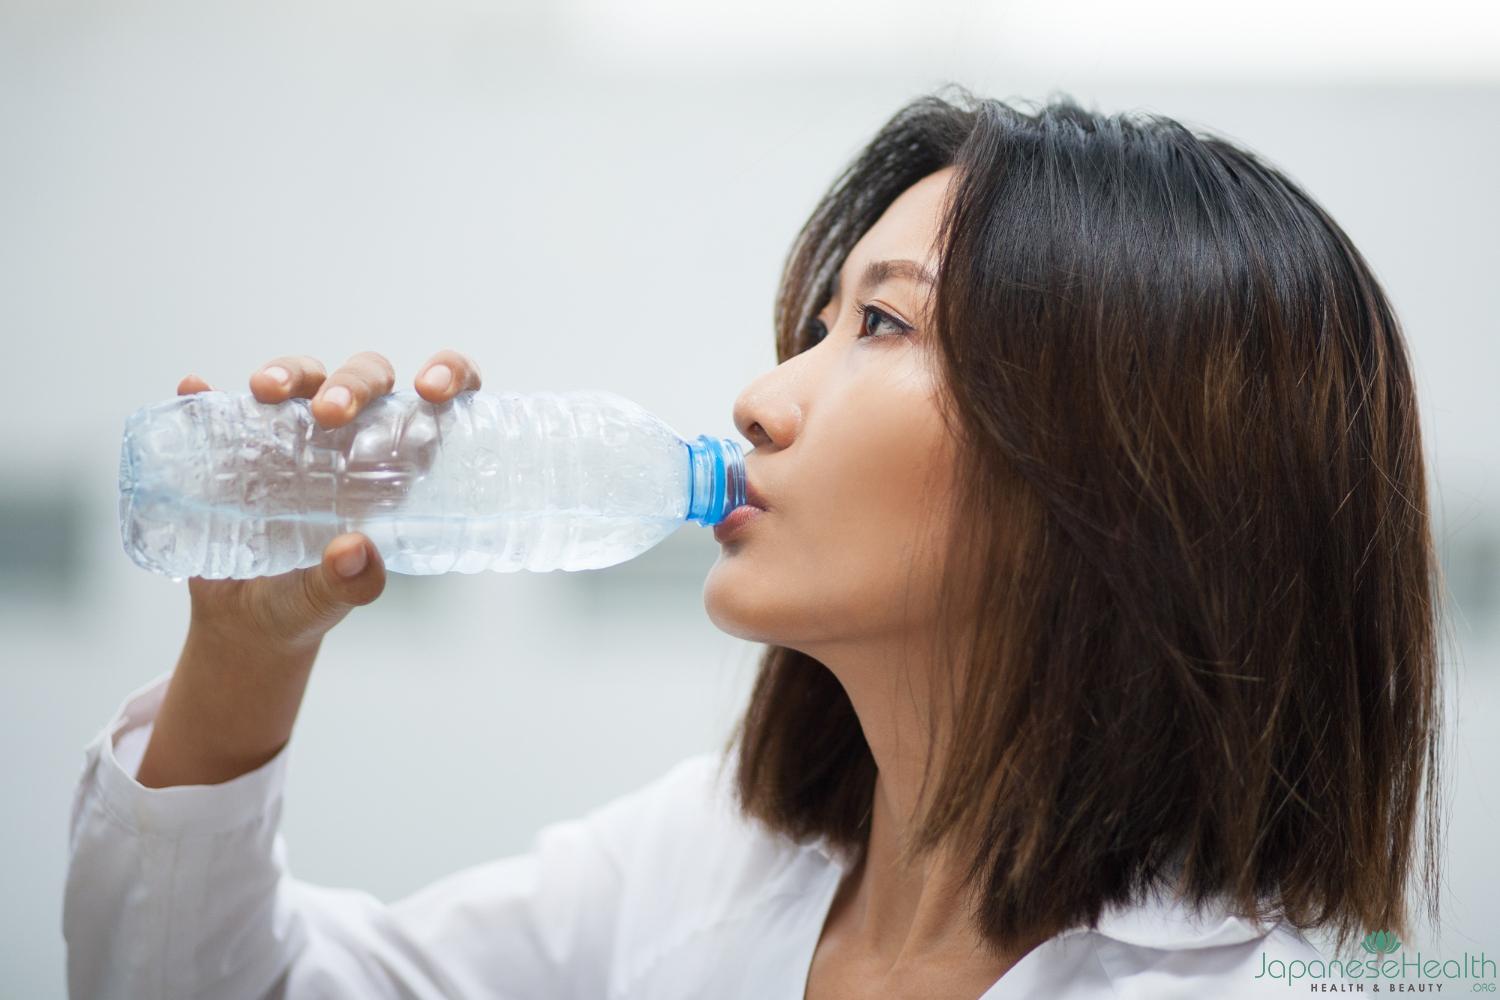 水分補給: 水分を十分に摂取することで、喉の乾燥を防ぎ、粘膜を潤すことができます。